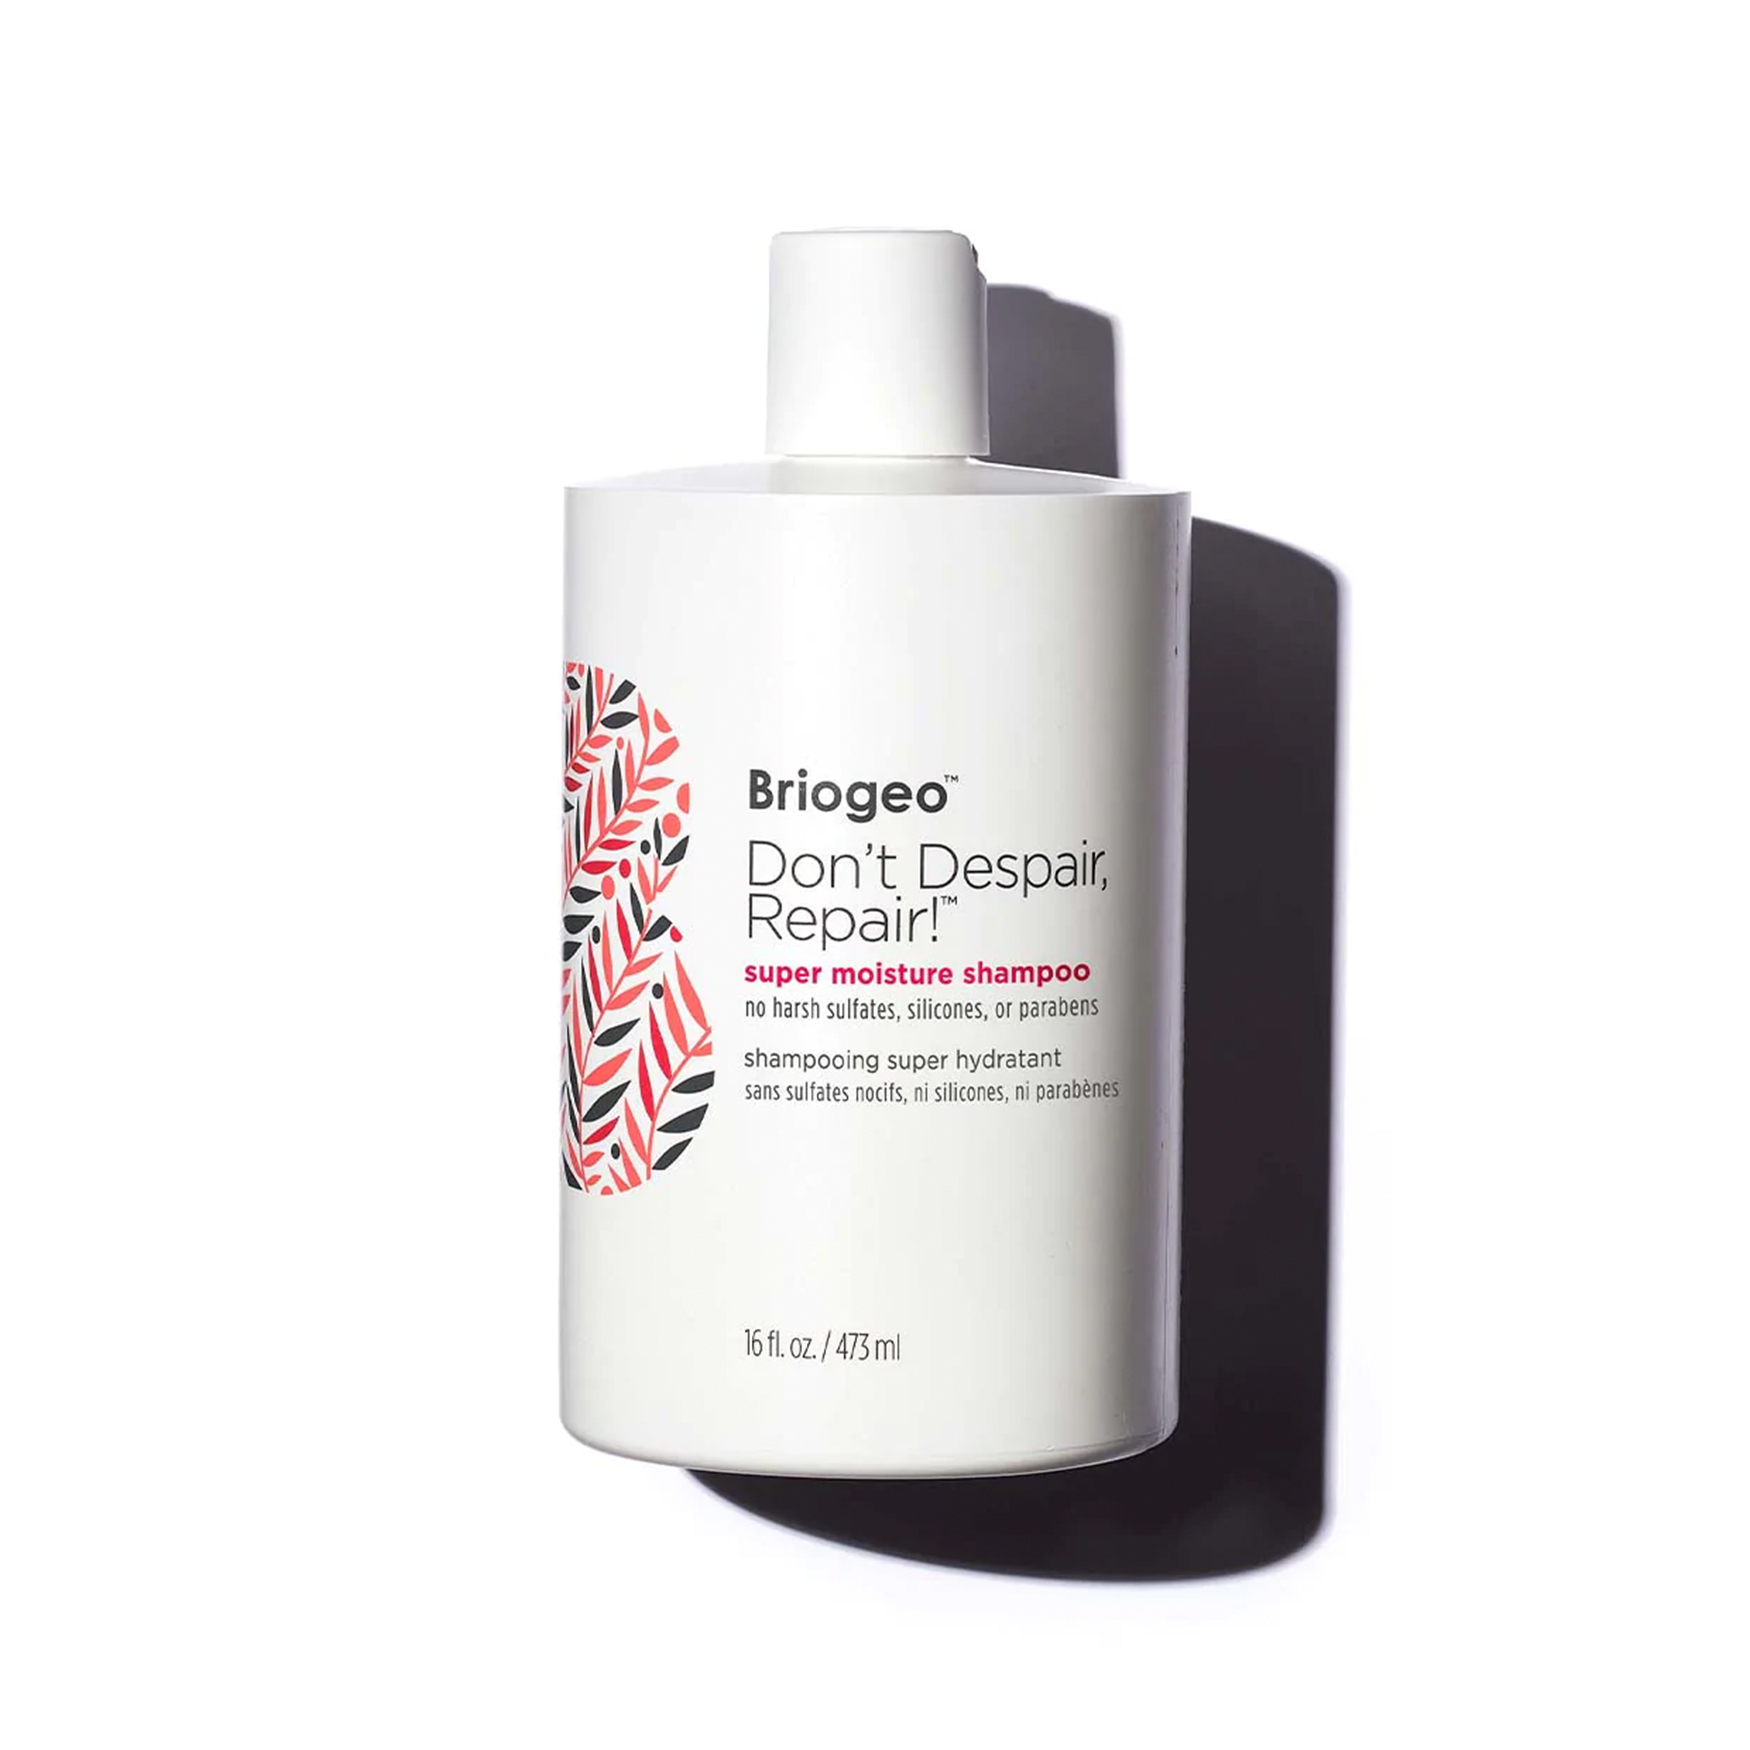 Briogeo Don't Despair, Repair! Super Moisture Shampoo For Damaged Hair